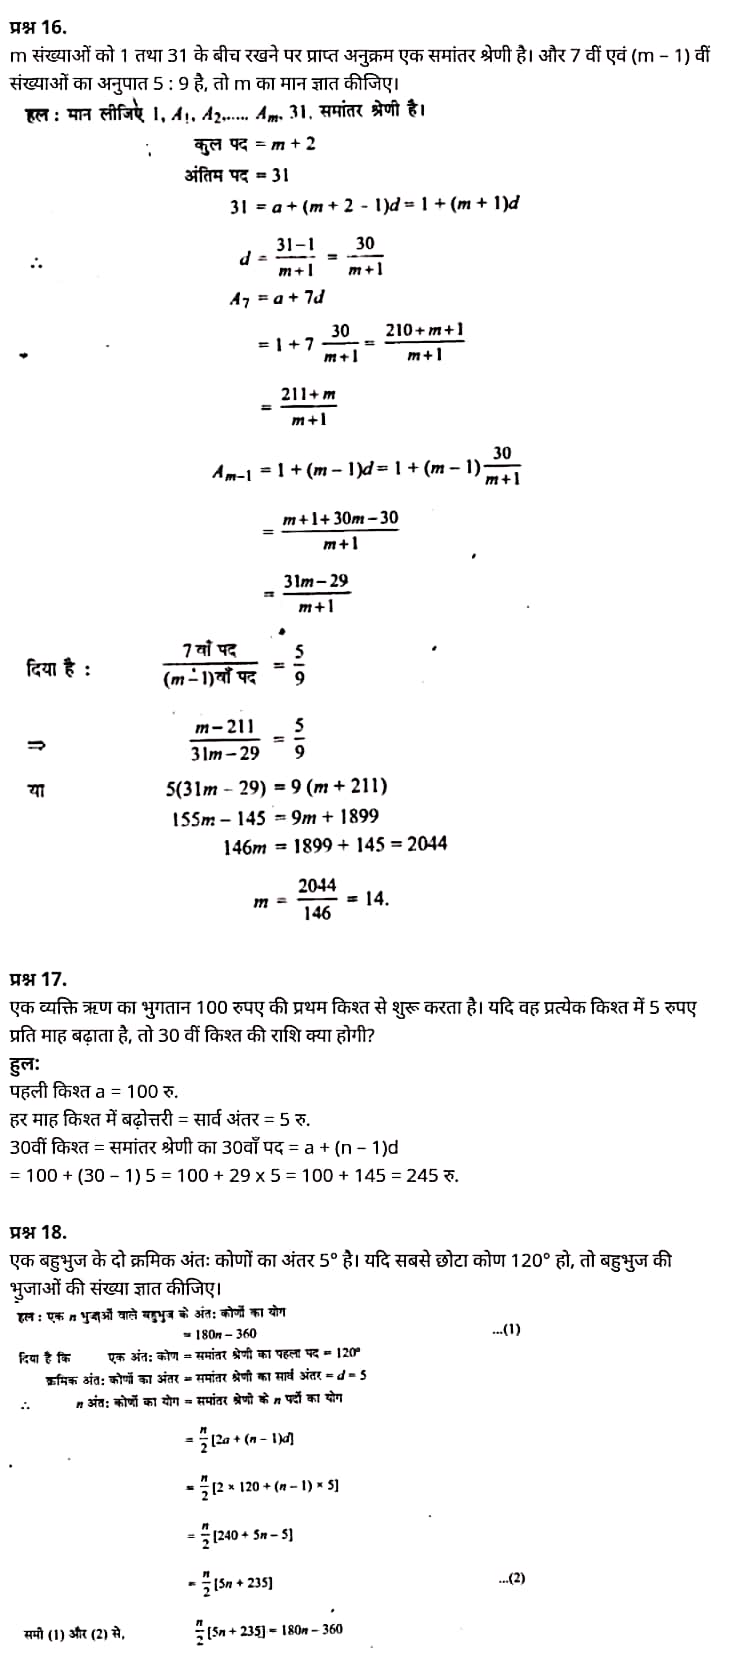 Class 11 matha Chapter 9,  class 11 matha chapter 9, ncert solutions in hindi,  class 11 matha chapter 9, notes in hindi,  class 11 matha chapter 9, question answer,  class 11 matha chapter 9, notes,  11 class matha chapter 9, in hindi,  class 11 matha chapter 9, in hindi,  class 11 matha chapter 9, important questions in hindi,  class 11 matha notes in hindi,   matha class 11 notes pdf,  matha Class 11 Notes 2021 NCERT,  matha Class 11 PDF,  matha book,  matha Quiz Class 11,  11th matha book up board,  up Board 11th matha Notes,  कक्षा 11 मैथ्स अध्याय 9,  कक्षा 11 मैथ्स का अध्याय 9, ncert solution in hindi,  कक्षा 11 मैथ्स के अध्याय 9, के नोट्स हिंदी में,  कक्षा 11 का मैथ्स अध्याय 9, का प्रश्न उत्तर,  कक्षा 11 मैथ्स अध्याय 9, के नोट्स,  11 कक्षा मैथ्स अध्याय 9, हिंदी में,  कक्षा 11 मैथ्स अध्याय 9, हिंदी में,  कक्षा 11 मैथ्स अध्याय 9, महत्वपूर्ण प्रश्न हिंदी में,  कक्षा 11 के मैथ्स के नोट्स हिंदी में,  मैथ्स कक्षा 11 नोट्स pdf,  मैथ्स कक्षा 11 नोट्स 2021 NCERT,  मैथ्स कक्षा 11 PDF,  मैथ्स पुस्तक,  मैथ्स की बुक,  मैथ्स प्रश्नोत्तरी Class 11, 11 वीं मैथ्स पुस्तक up board,  बिहार बोर्ड 11 वीं मैथ्स नोट्स,   कक्षा 11 गणित अध्याय 9,  कक्षा 11 गणित का अध्याय 9, ncert solution in hindi,  कक्षा 11 गणित के अध्याय 9, के नोट्स हिंदी में,  कक्षा 11 का गणित अध्याय 9, का प्रश्न उत्तर,  कक्षा 11 गणित अध्याय 9, के नोट्स,  11 कक्षा गणित अध्याय 9, हिंदी में,  कक्षा 11 गणित अध्याय 9, हिंदी में,  कक्षा 11 गणित अध्याय 9, महत्वपूर्ण प्रश्न हिंदी में,  कक्षा 11 के गणित के नोट्स हिंदी में,